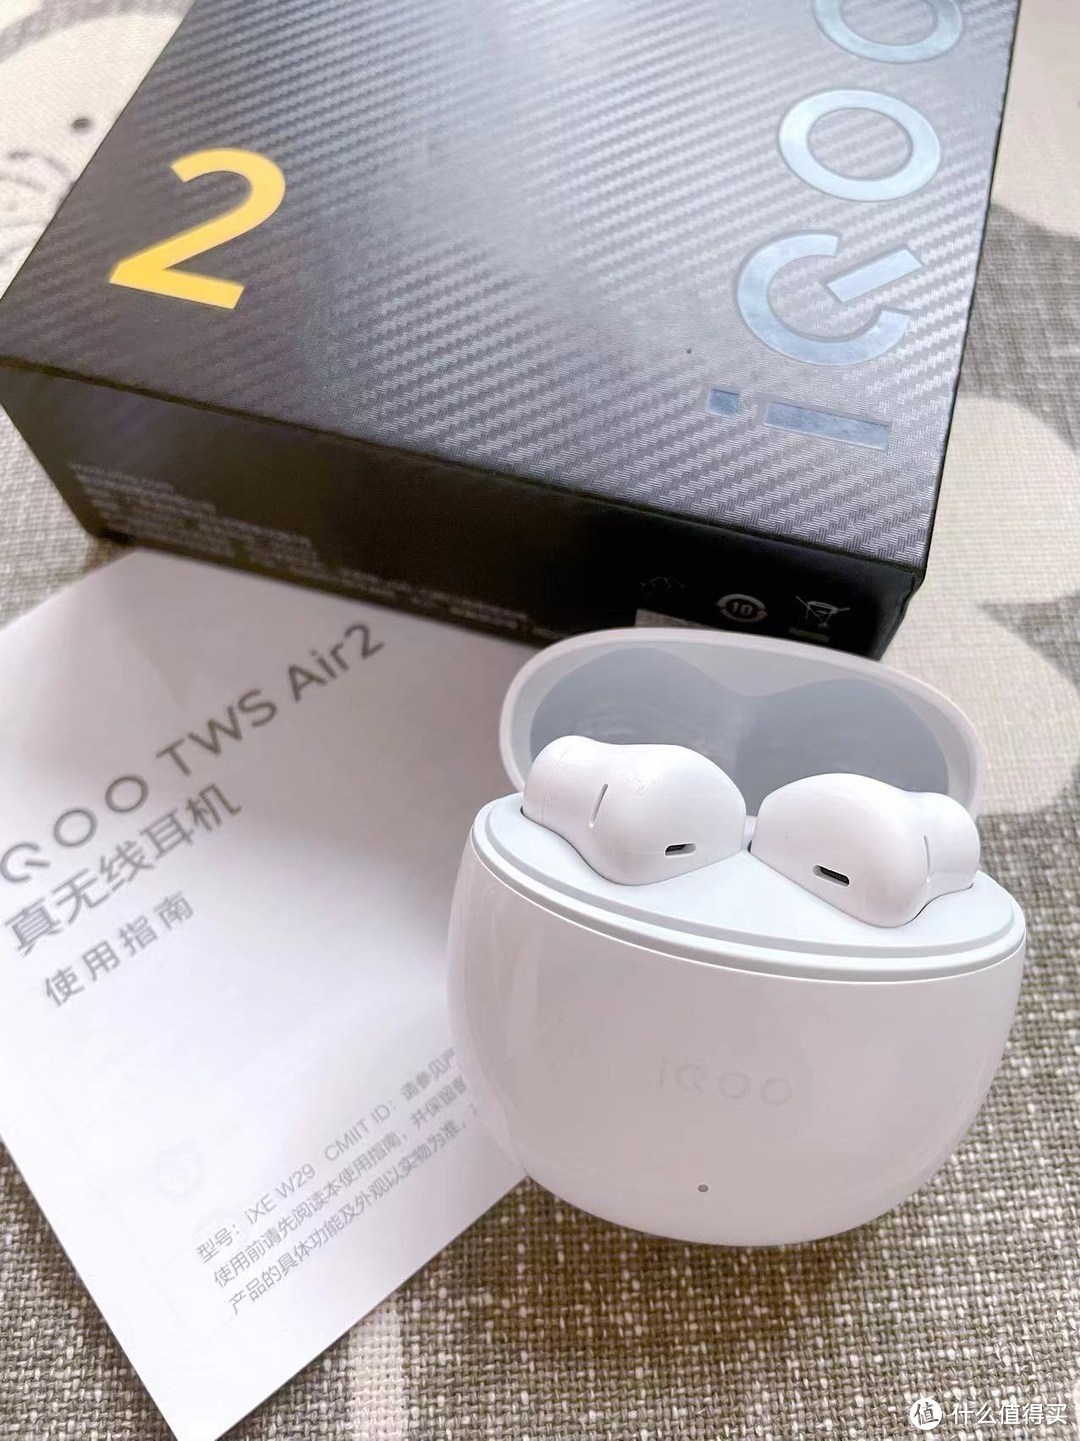 vivo iQOO TWS Air2耳机，百元价位中的超低延迟与卓越音质